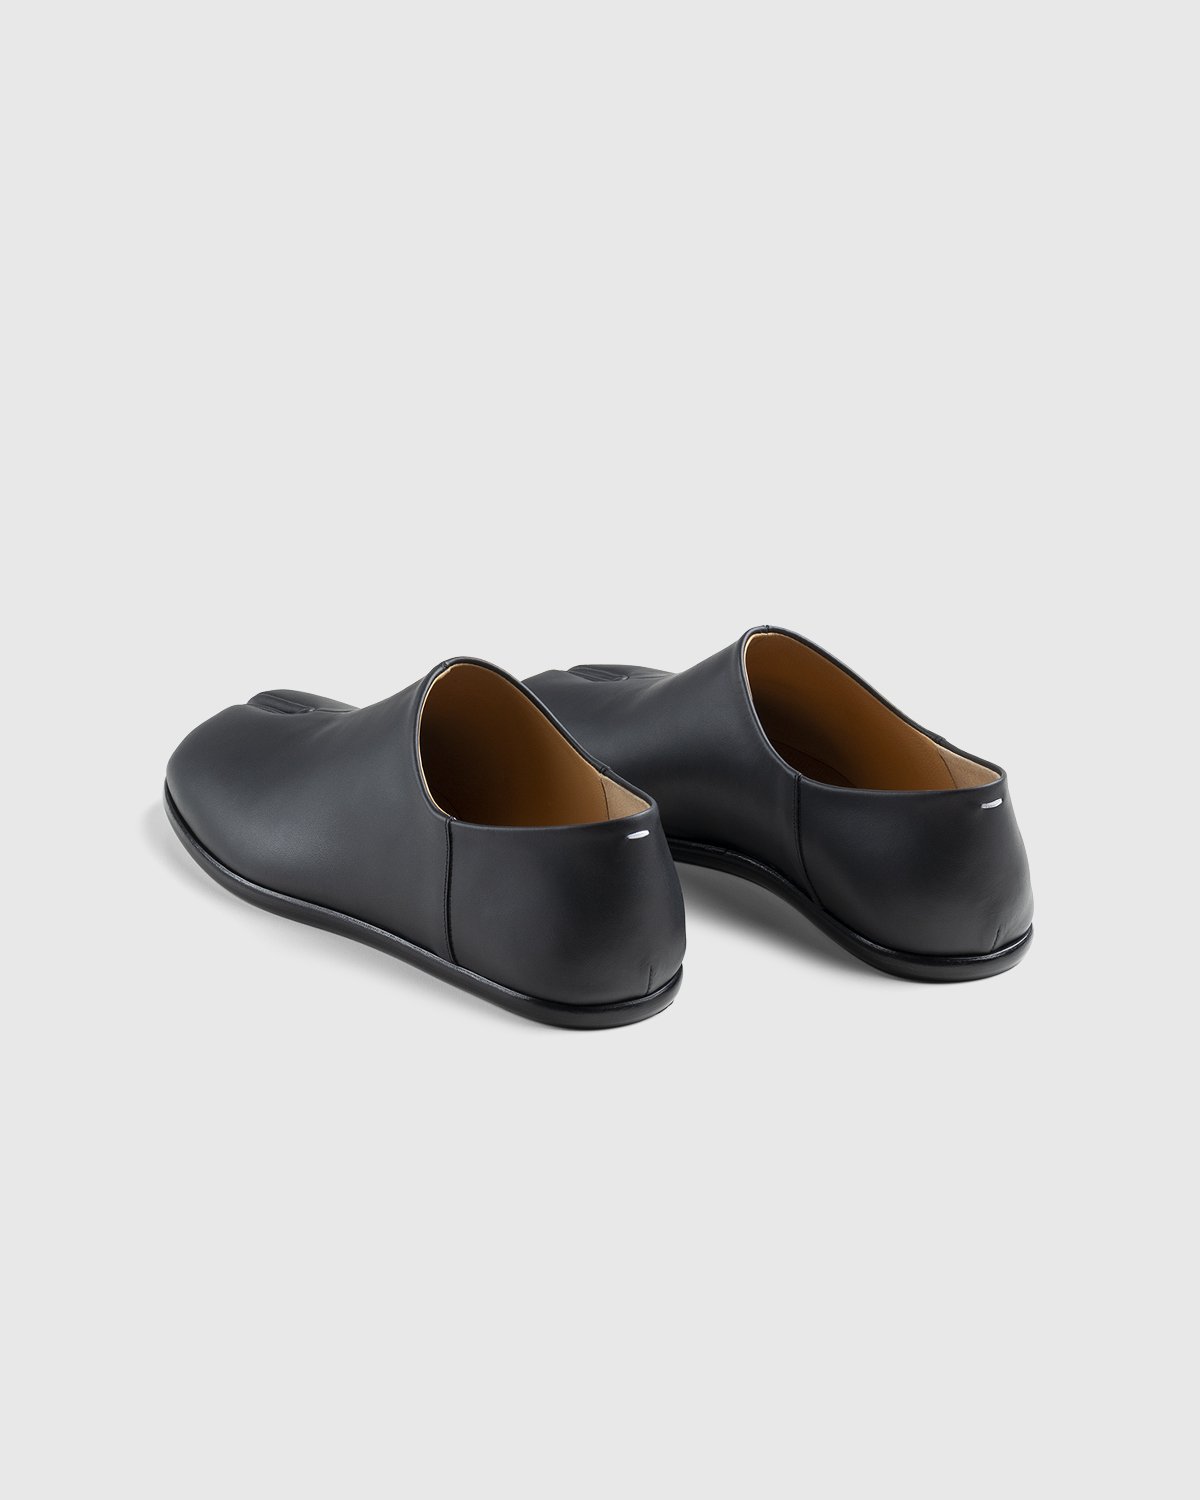 Maison Margiela - Tabi Slip On Black - Footwear - Black - Image 4